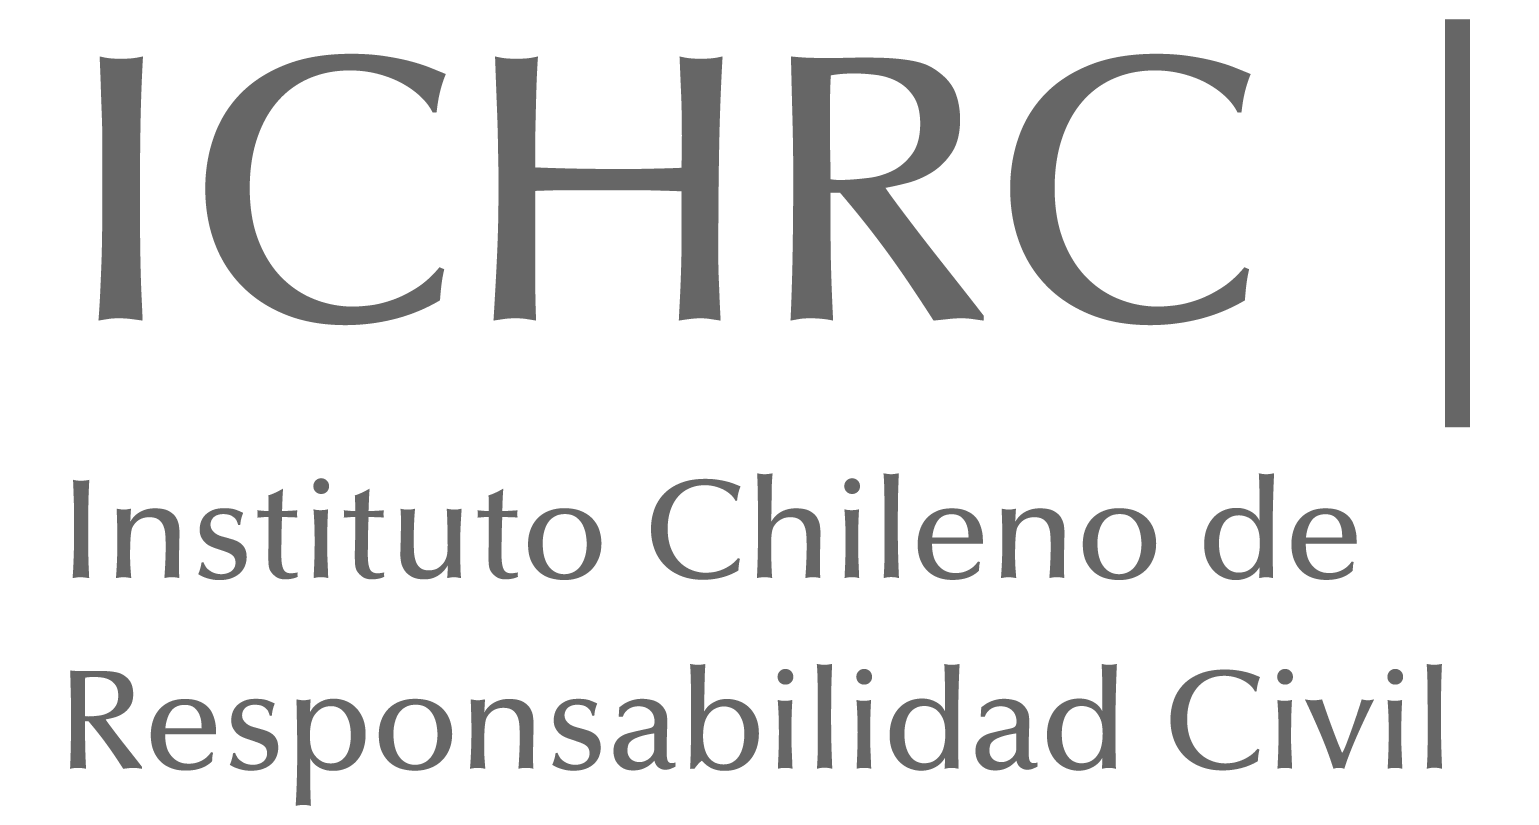 ICHRC - Instituto Chileno de Responsabilidad Civil